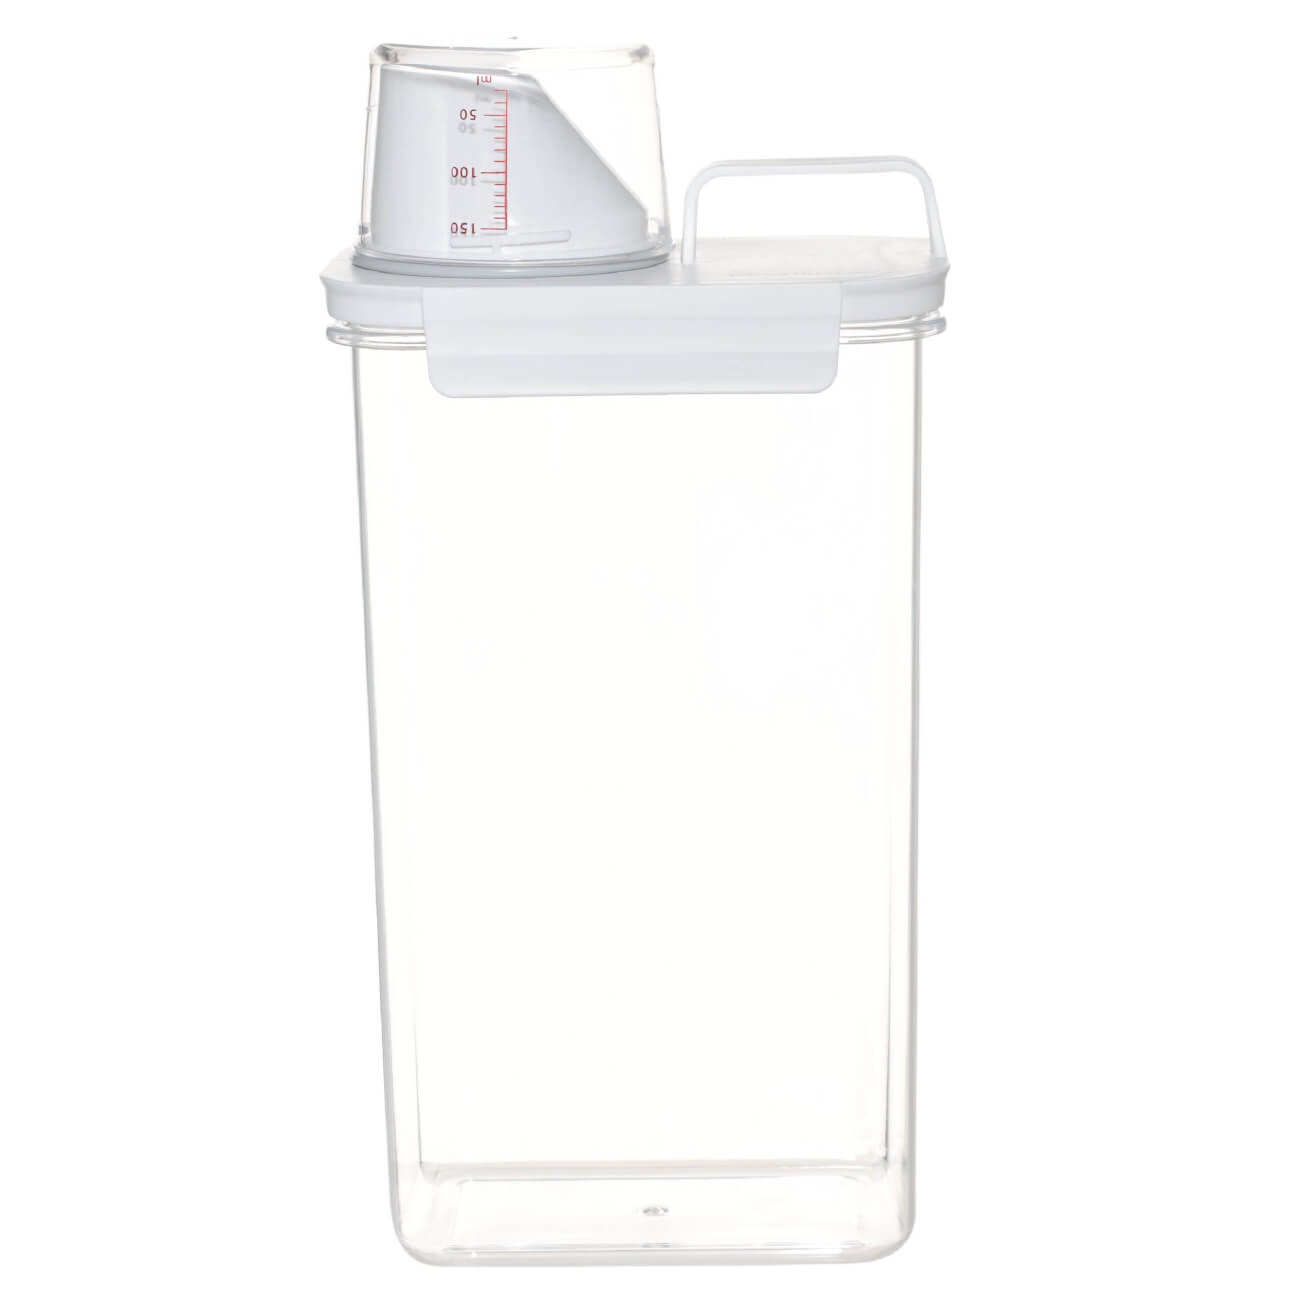 контейнер для стирального порошка birdhouse органайзер для моющих средств 1 шт Контейнер для стирального порошка или геля, 2,3 л, с мерником, пластик, белый, Compact